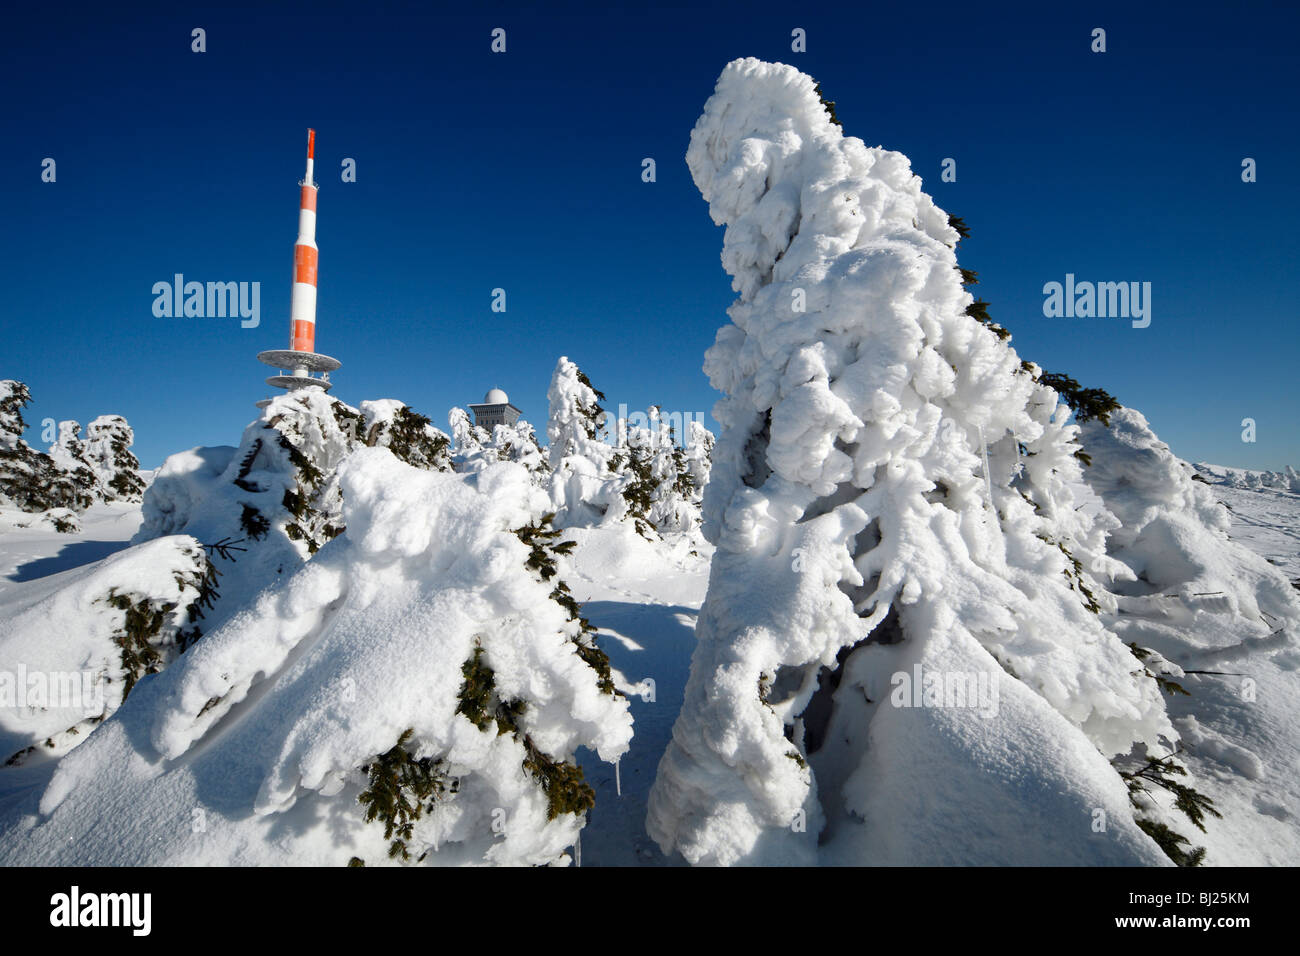 Mât de transmission, couverts de neige et de sapins en hiver, la montagne Brocken, Parc National Hochharz, Sachsen Anhalt, Allemagne  Banque D'Images